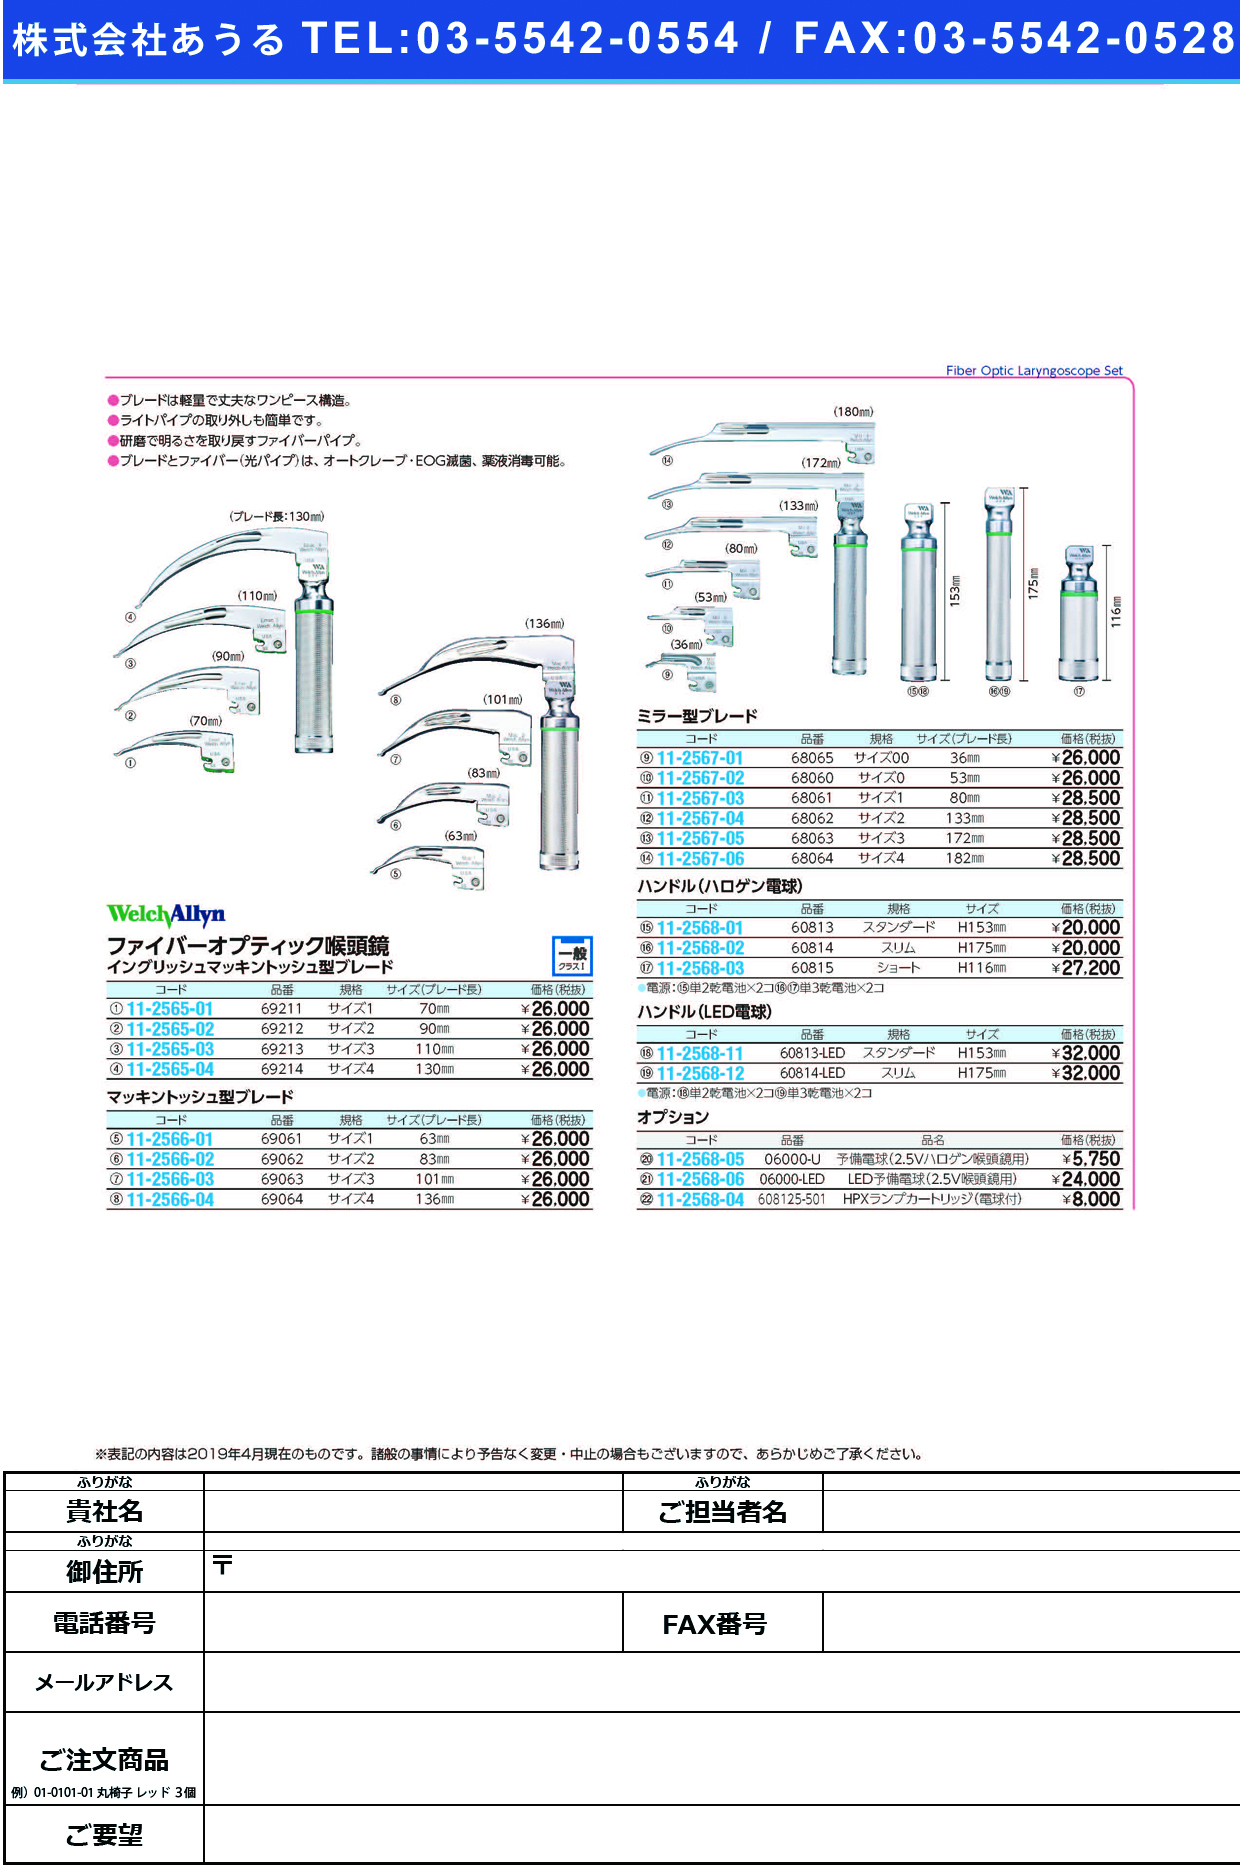 (11-2568-11)ＷＡ喉頭鏡ハンドルスタンダードＬＥＤ 60813LED(ﾀﾝ2ﾃﾞﾝﾁ2ｺﾂｷ ｺｳﾄｳｷｮｳﾊﾝﾄﾞﾙｽﾀﾝﾀﾞｰﾄﾞ【1本単位】【2019年カタログ商品】